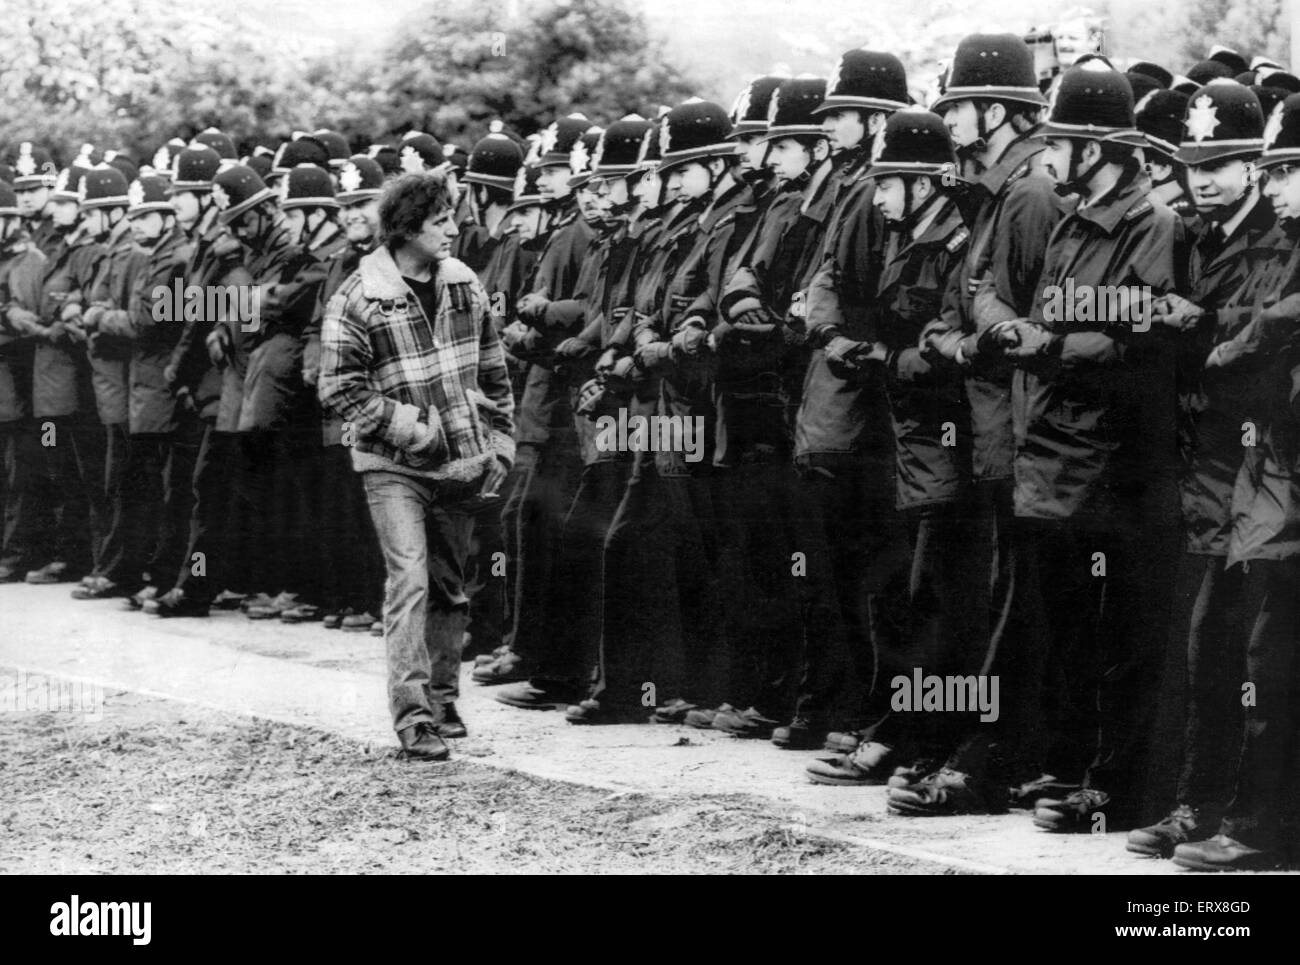 1984 - Grève des mineurs de 1985 en photo. Hudson Eric mineur inspecte la garde d'agents de police dans la première ligne à Orgreave cokerie près de Sheffield Yorkshire Lundi 4 juin 1984. Le 6 mars 1984, le National Coal Board a annoncé que l'accord Banque D'Images